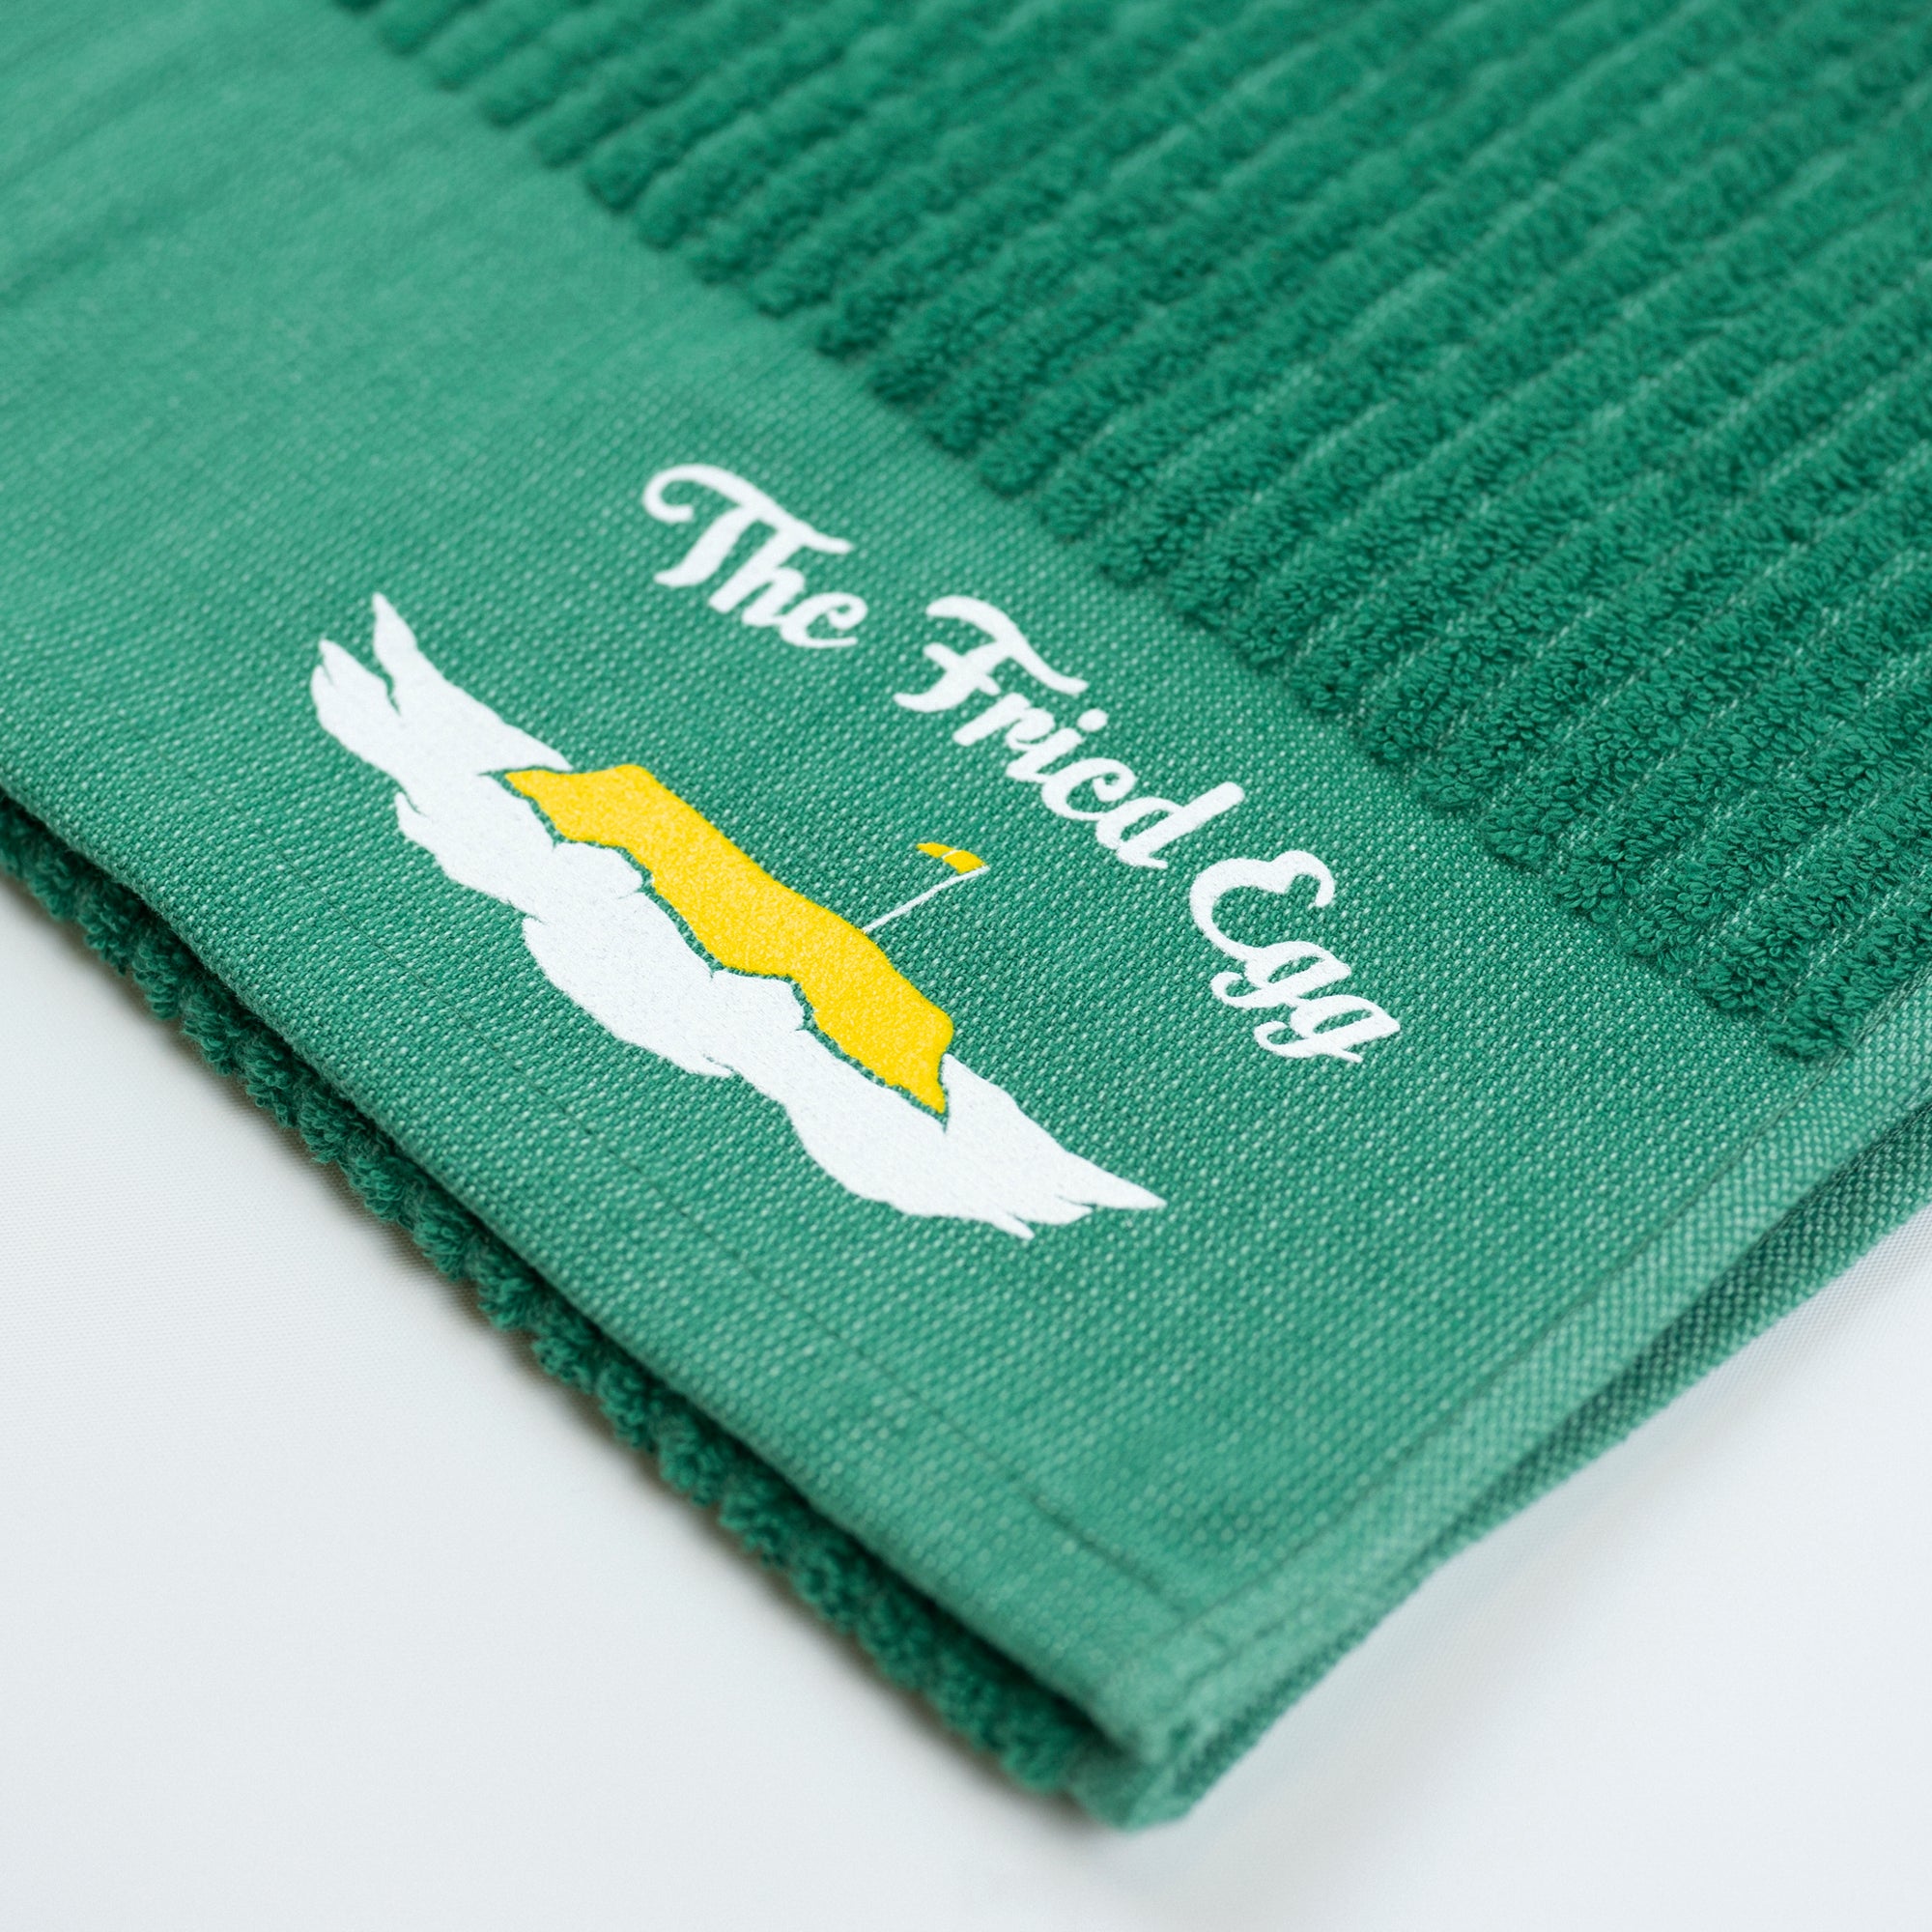 The Fried Egg Alternate Logo Towel - Green